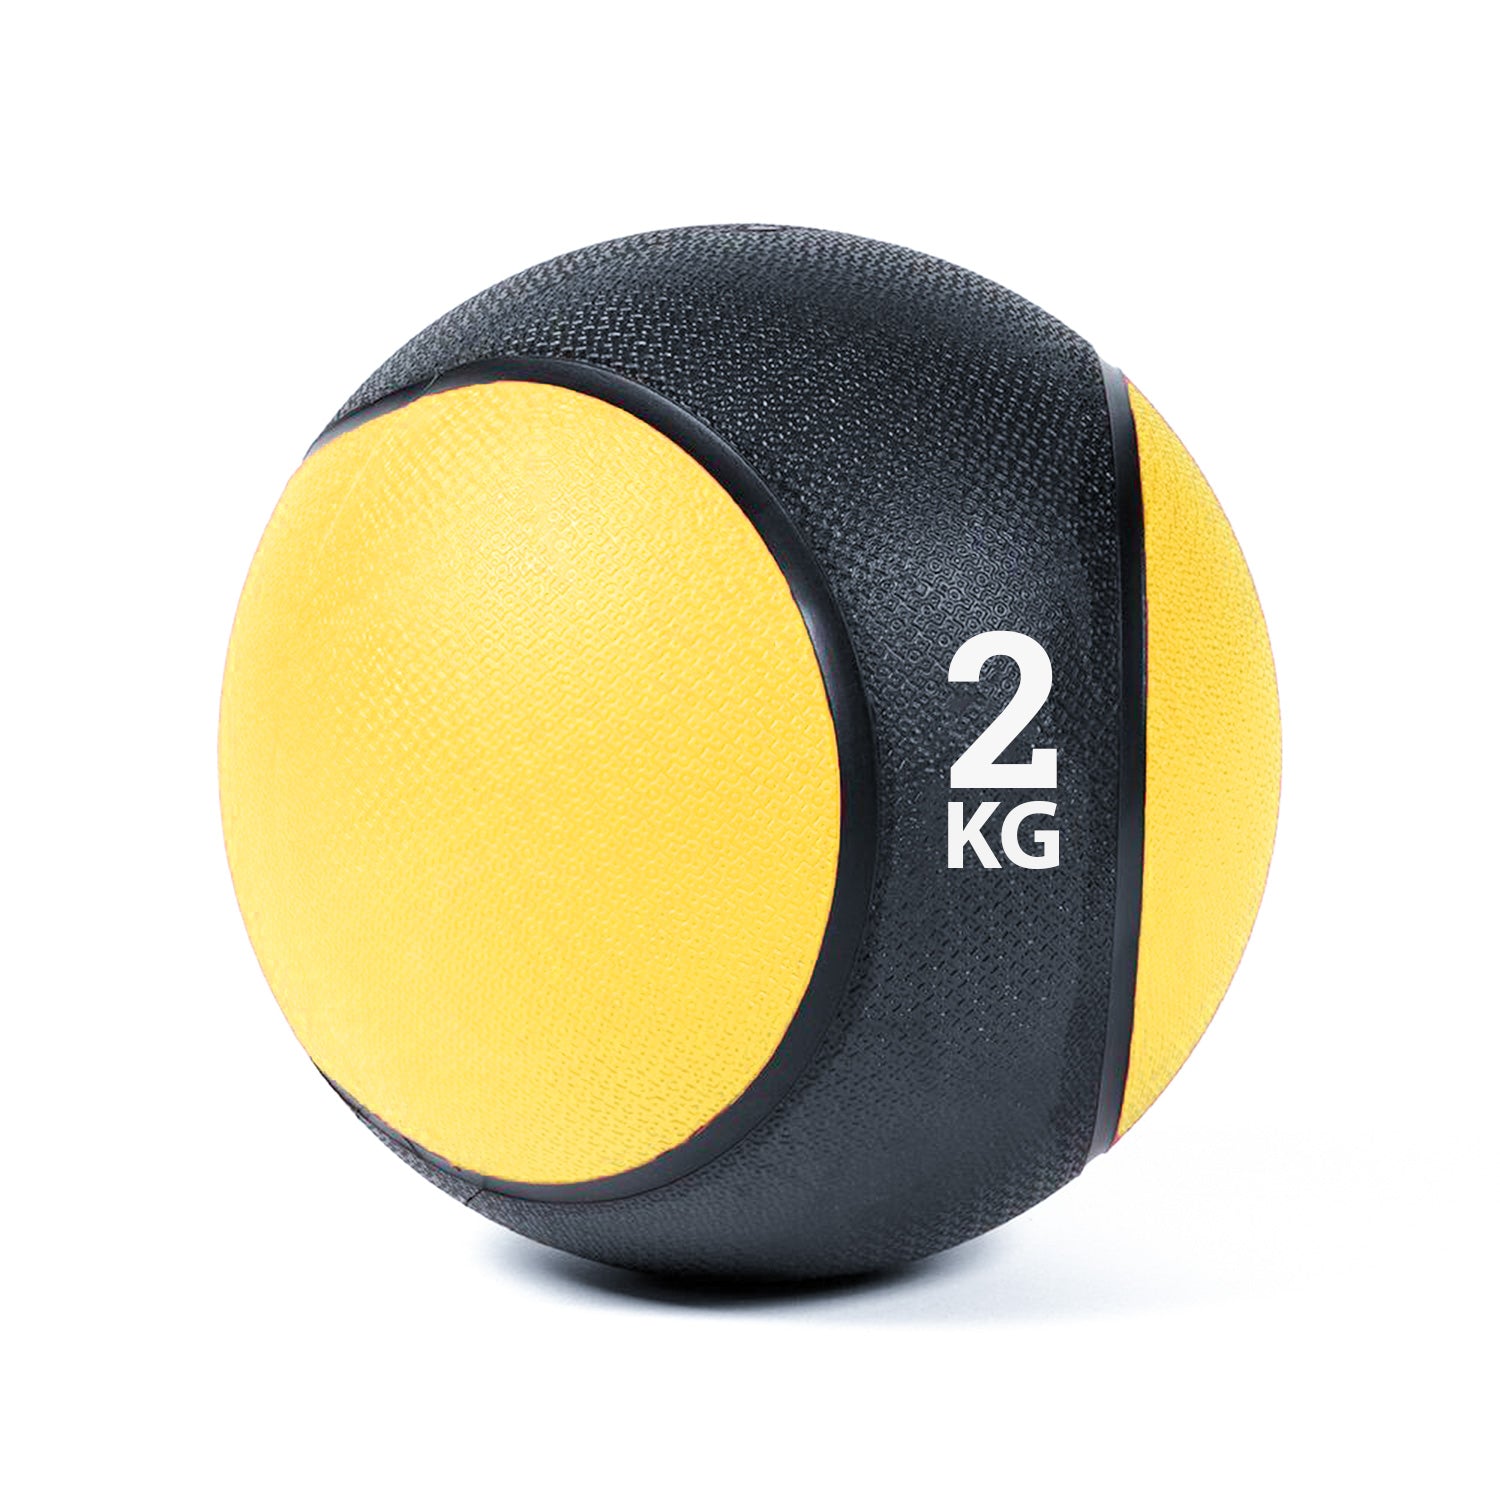 كرة طبية من المطاط لاعادة التأهيل و اللياقة البدنية - لون اسود و اصفر - وزن 2 كيلو جرام - Kanteen - كانتين